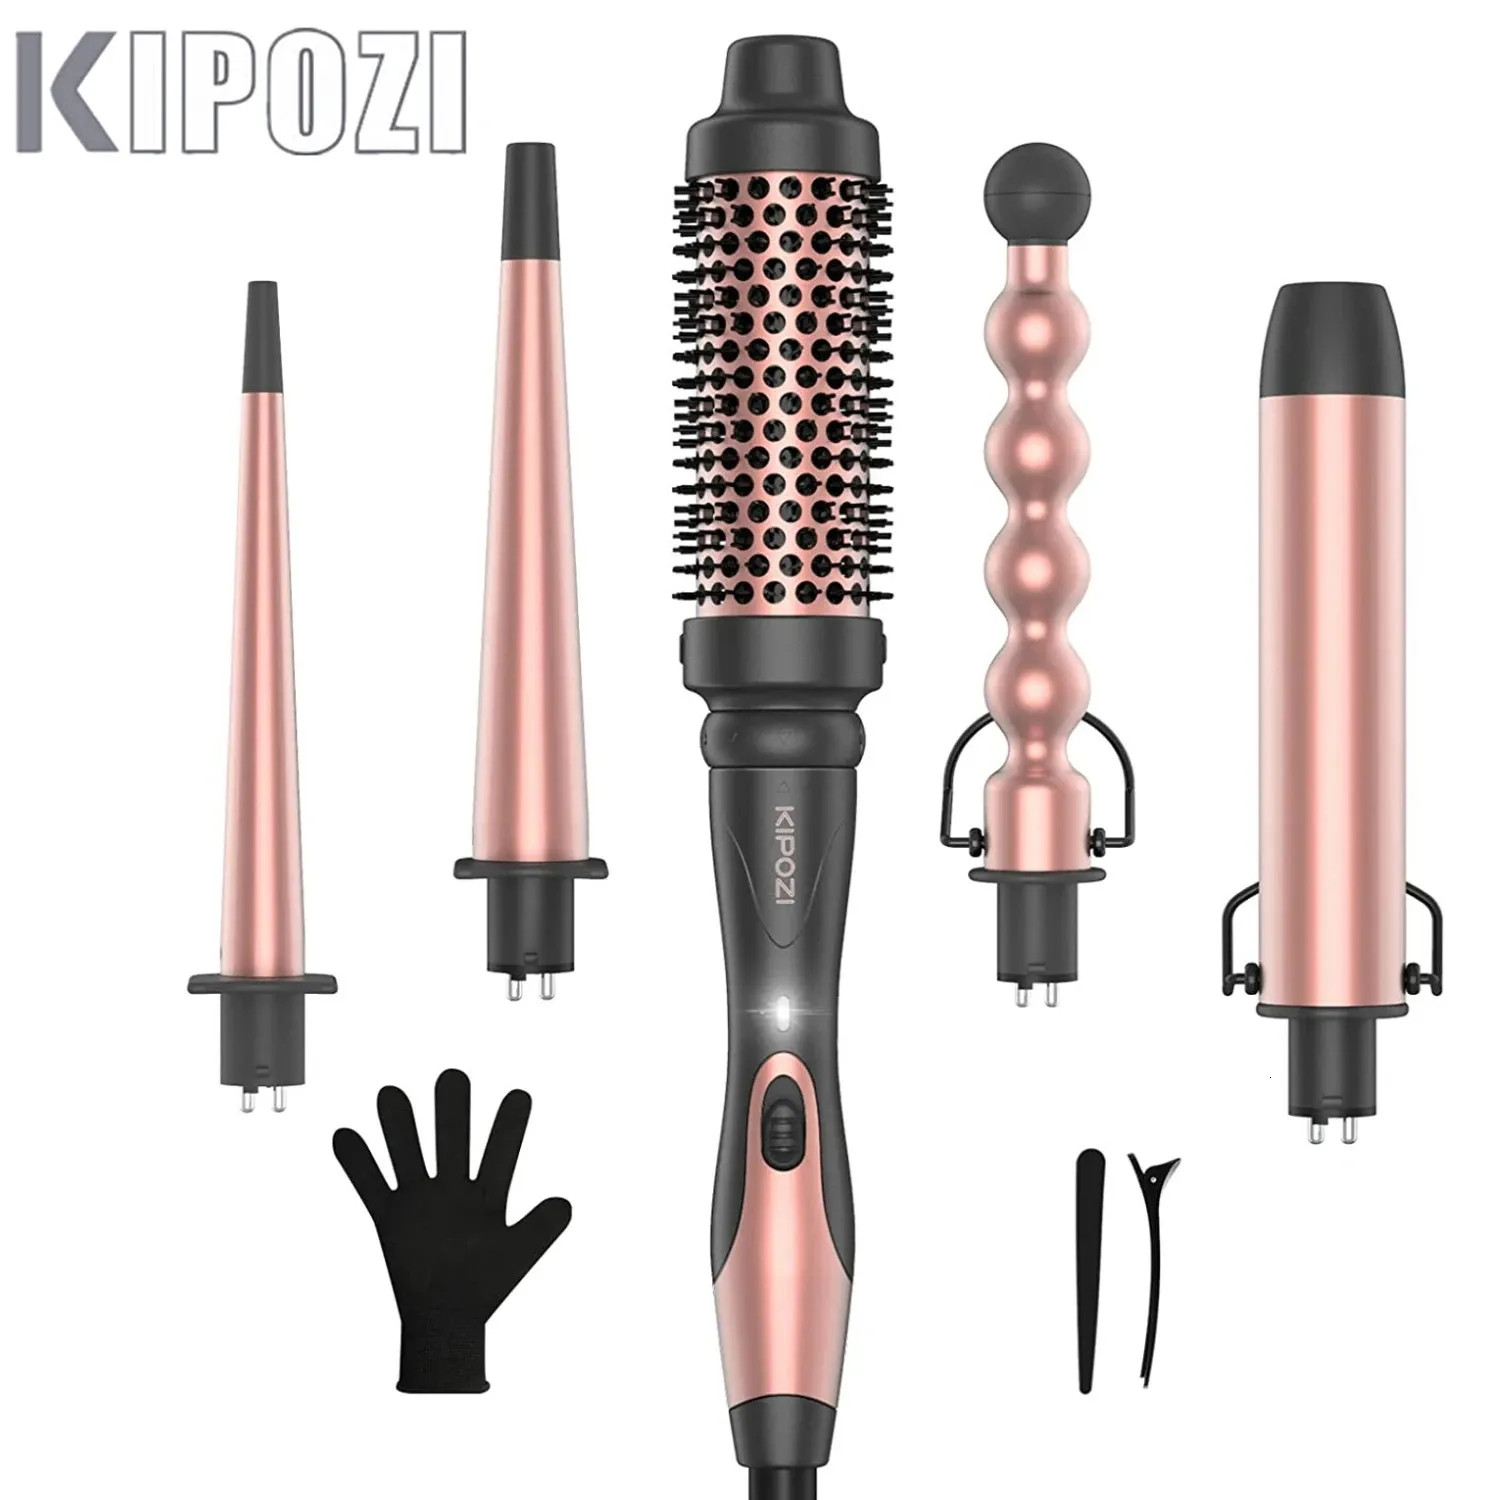 Kipozi Professional Curling Iron 5-в-1 Инструменты для волос мгновенный нагрев Электрический керлинг железный воздух щетка керамические бочки для женщины 240408